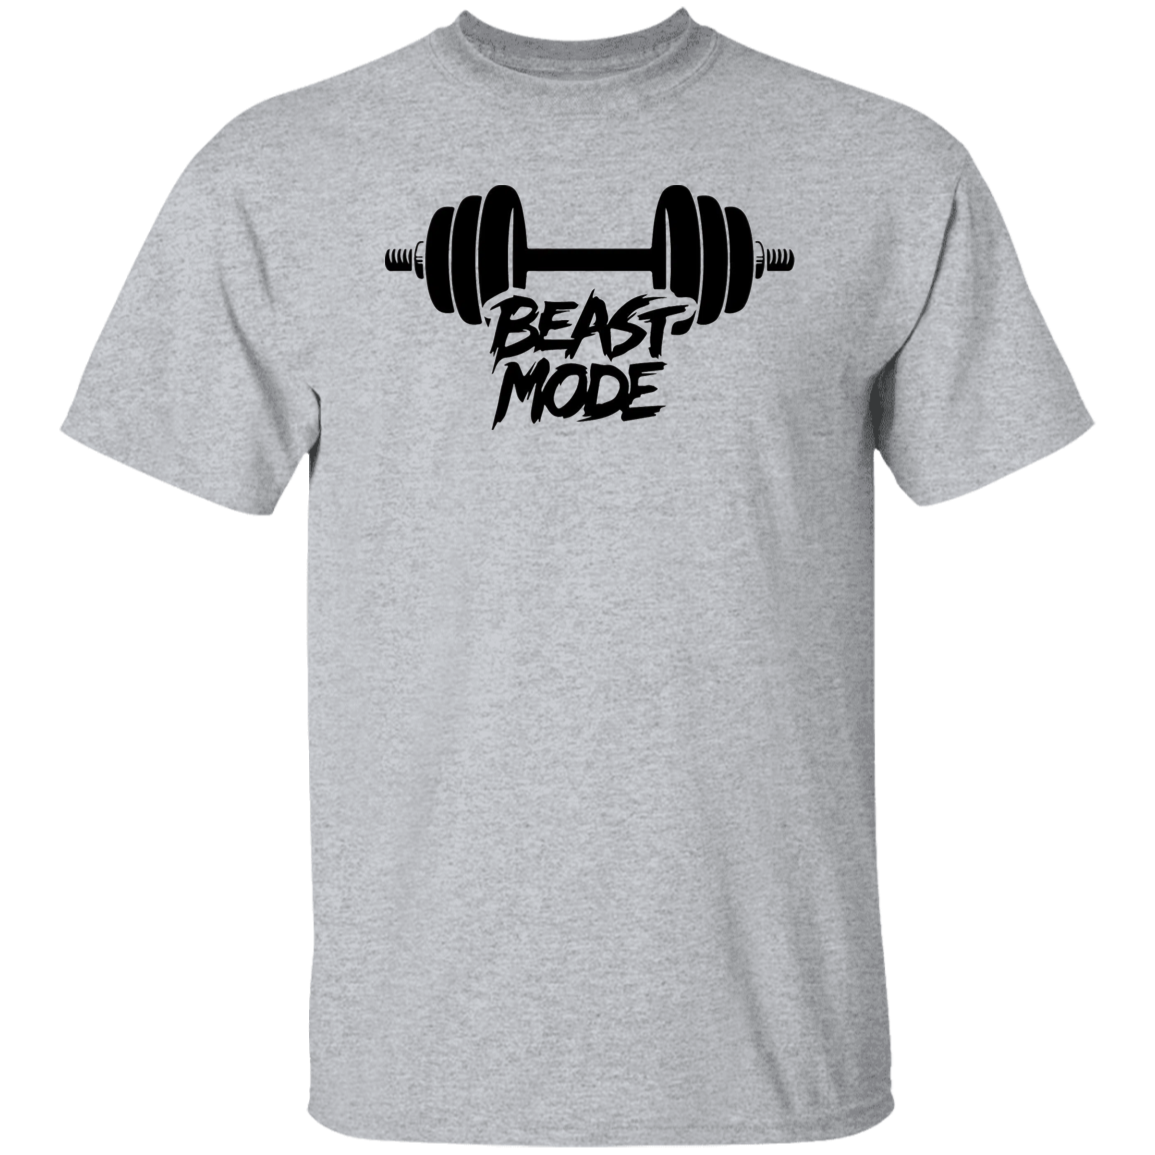 Beast Mode 5.3 oz. T-Shirt